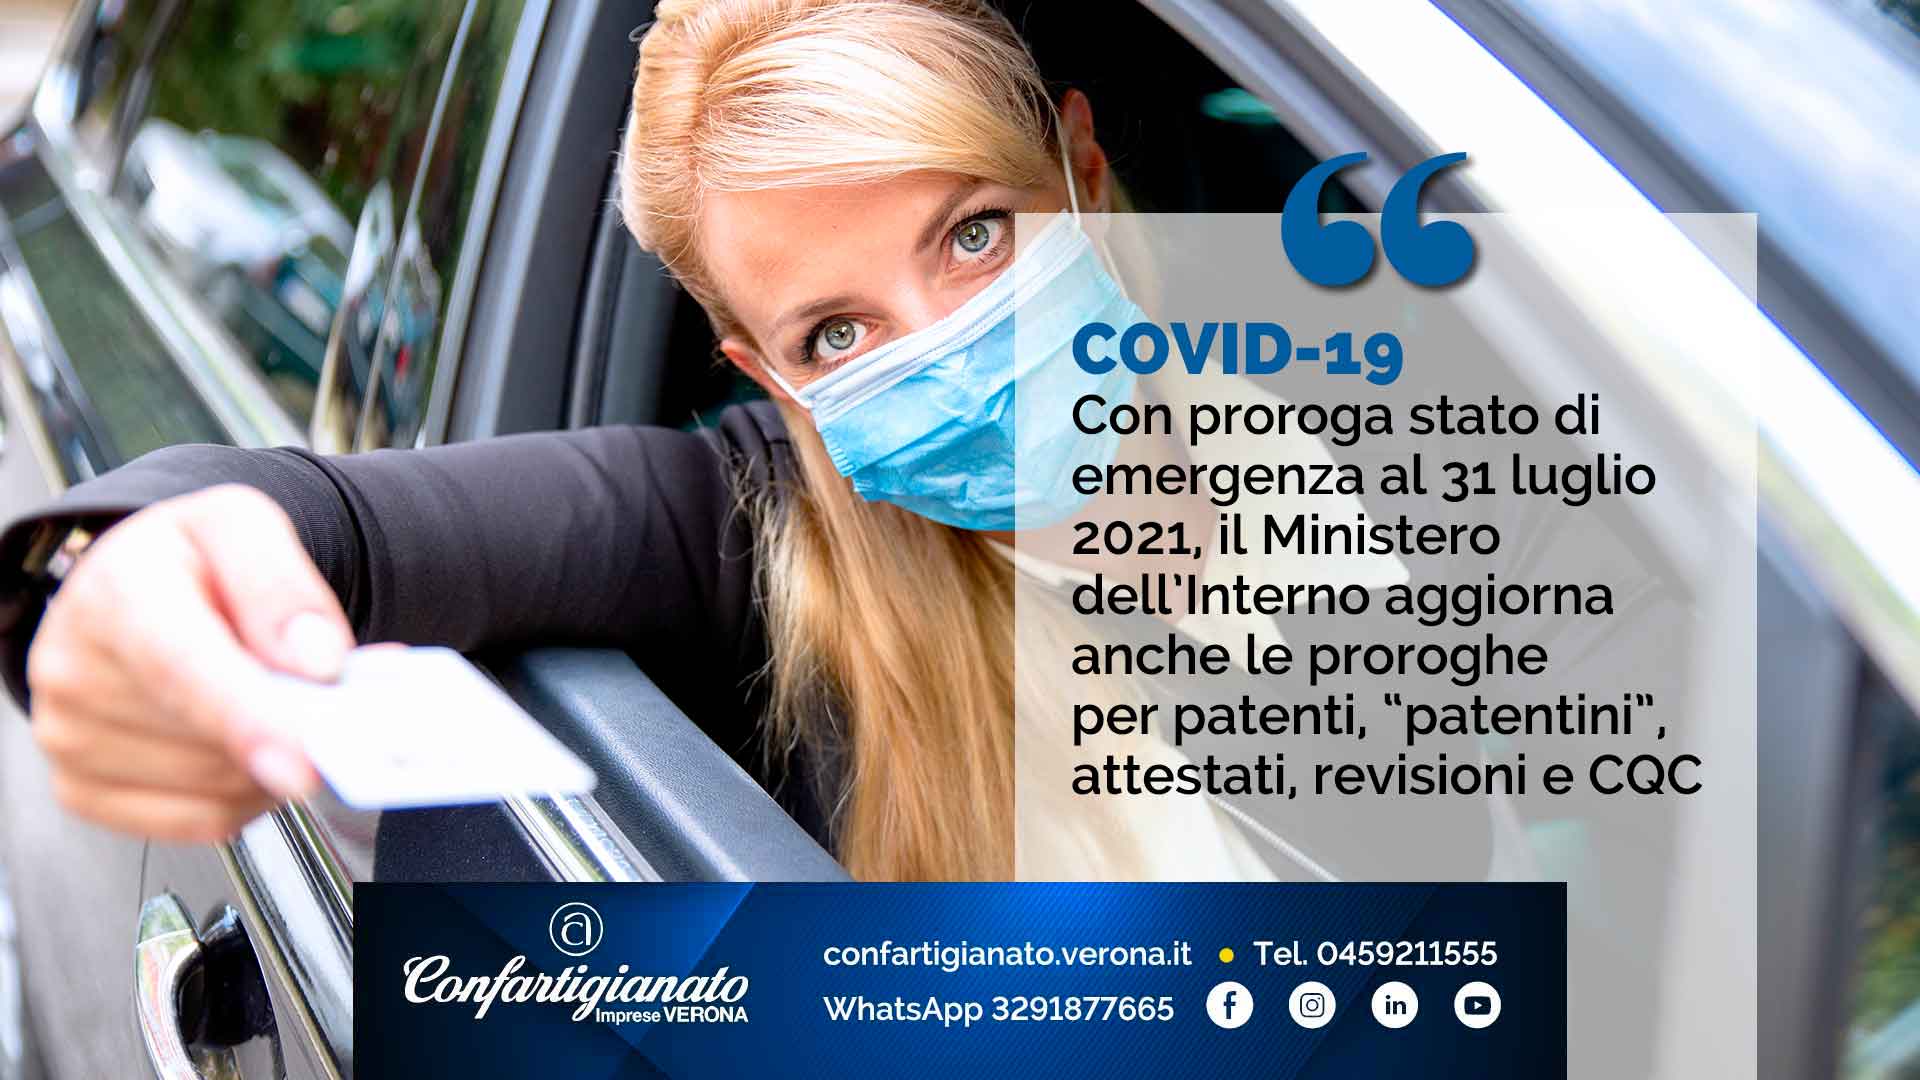 COVID-19 – Con proroga stato di emergenza al 31 luglio 2021, Ministero dell’Interno aggiorna anche proroghe per patenti, “patentini”, attestati, CQC e revisioni